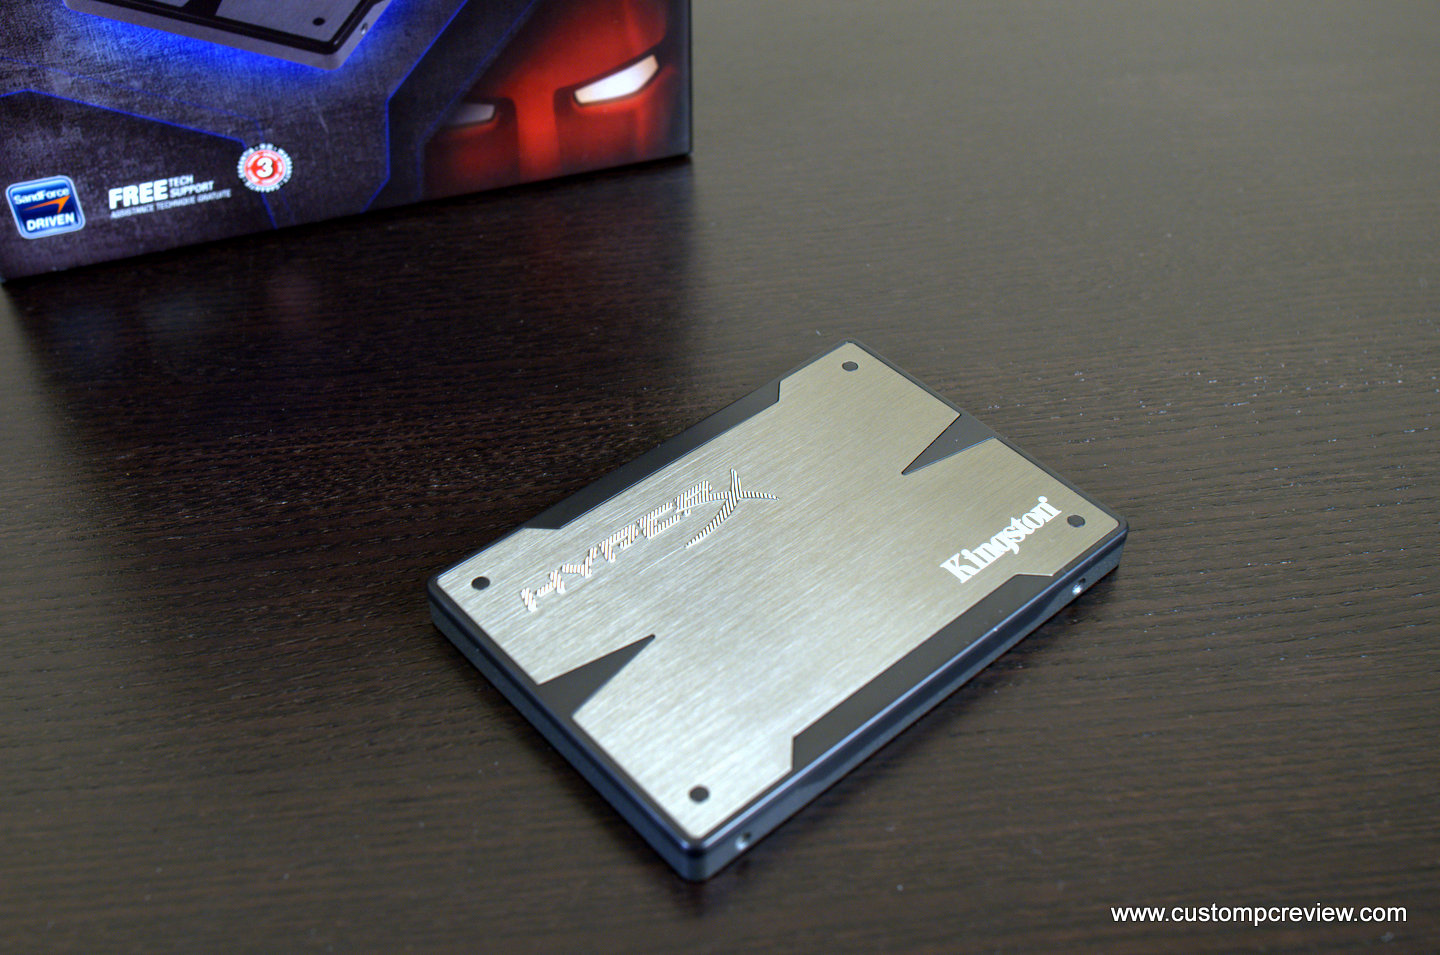 Kingston HyperX 3K 240GB SSD Review